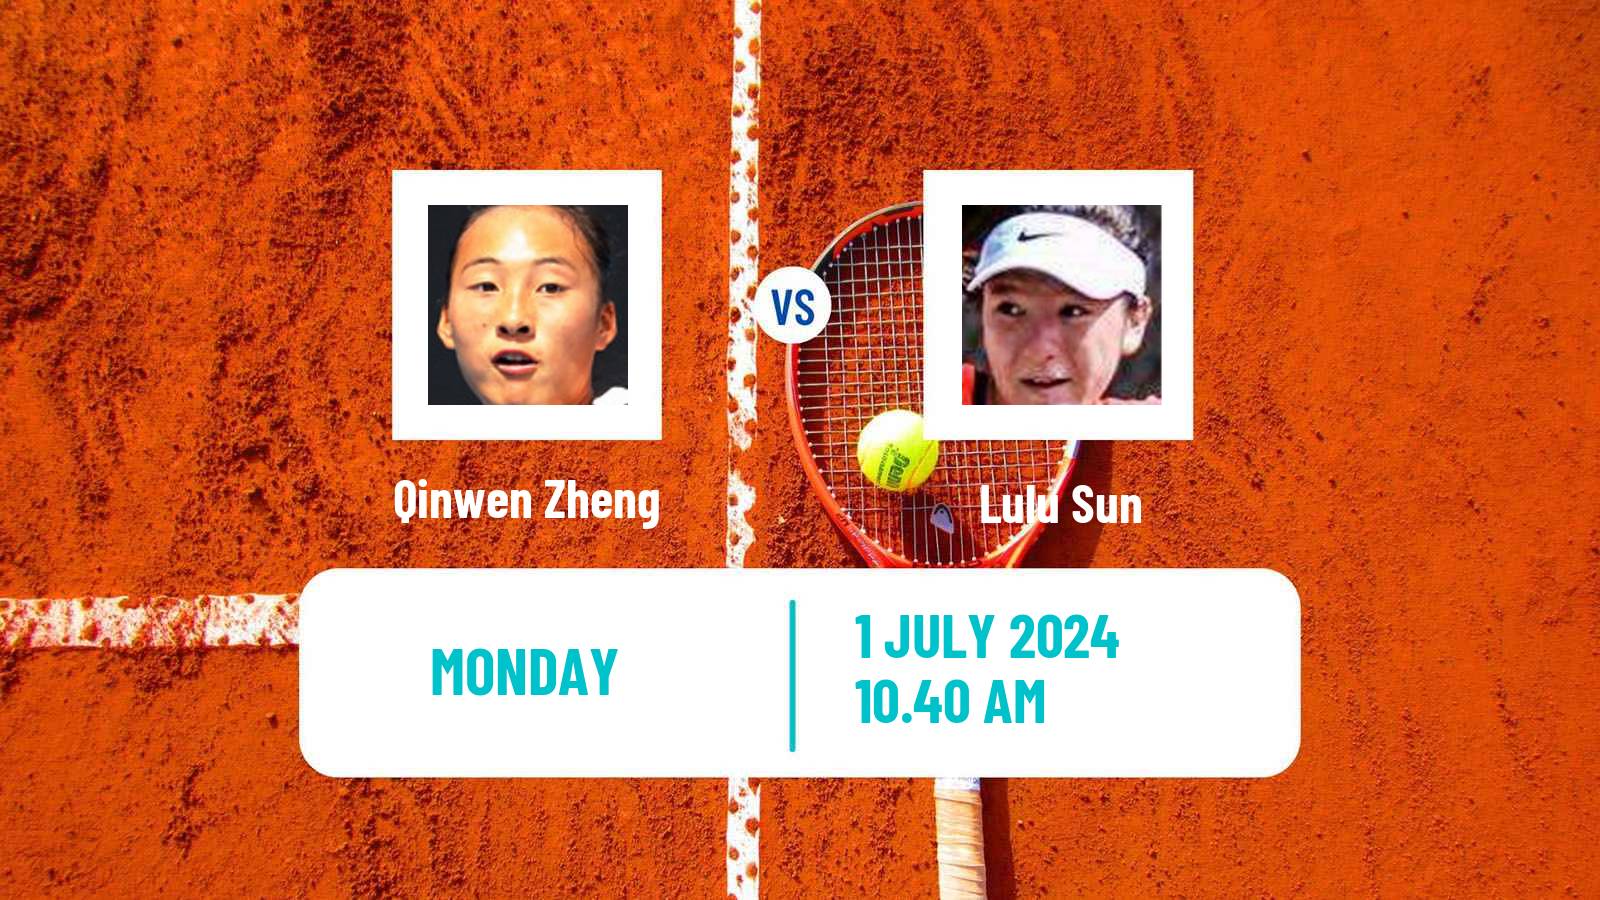 Tennis WTA Wimbledon Qinwen Zheng - Lulu Sun